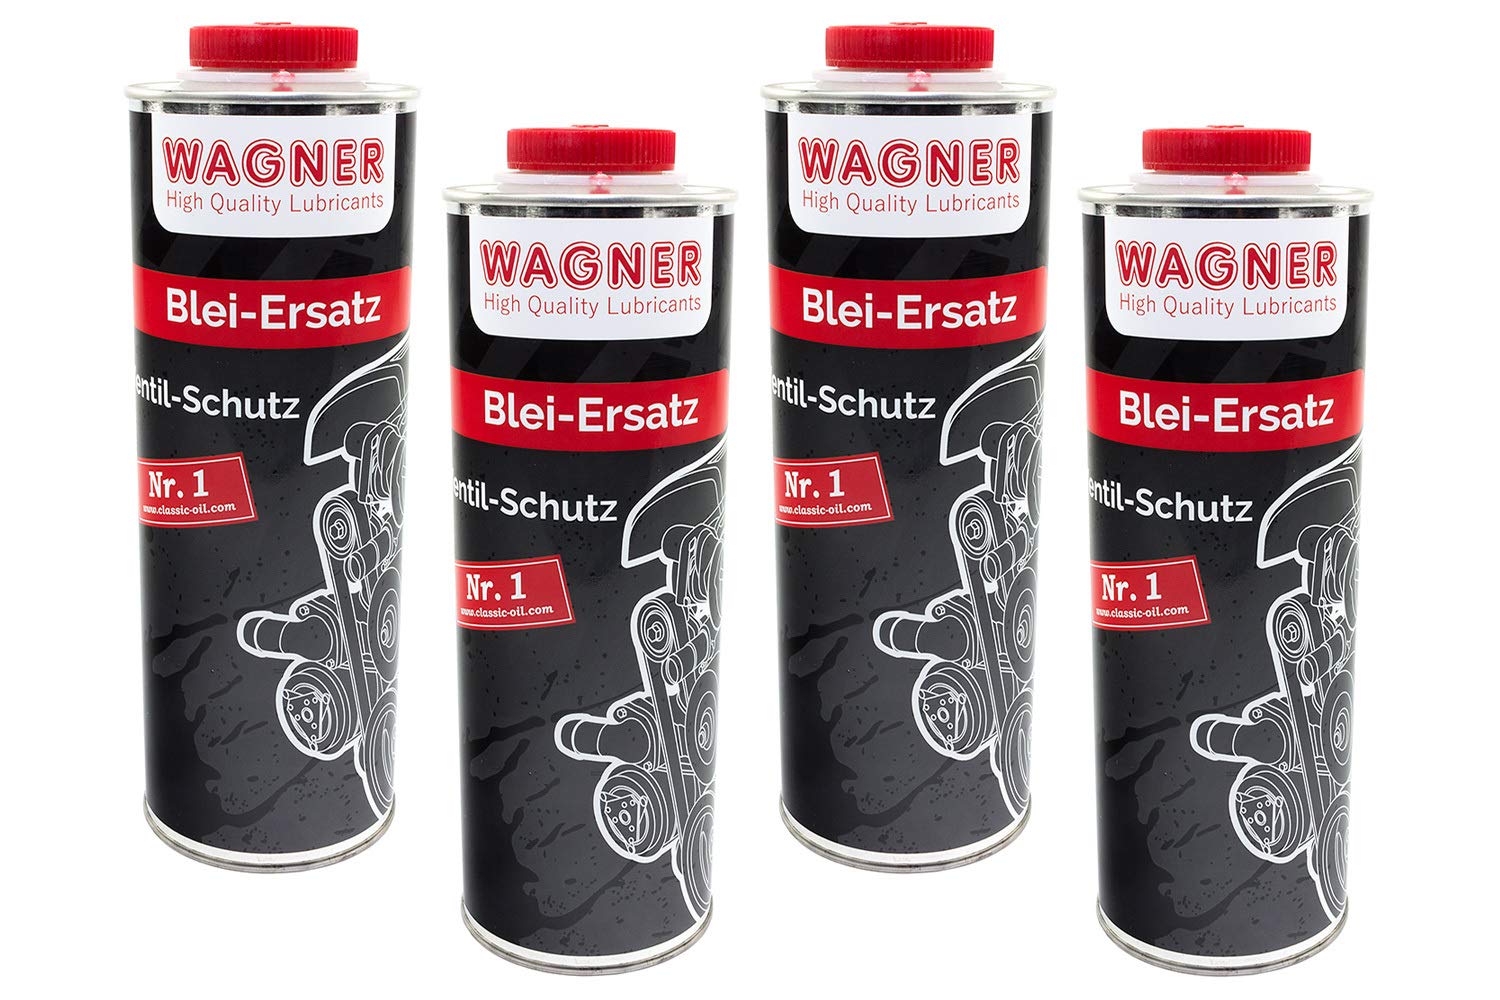 WAGNER Blei Ersatz Bleiersatz 4 Liter Zusatz Kraftstoff Additiv Benzin lead fuel von Wagner Spezialschmierstoffe